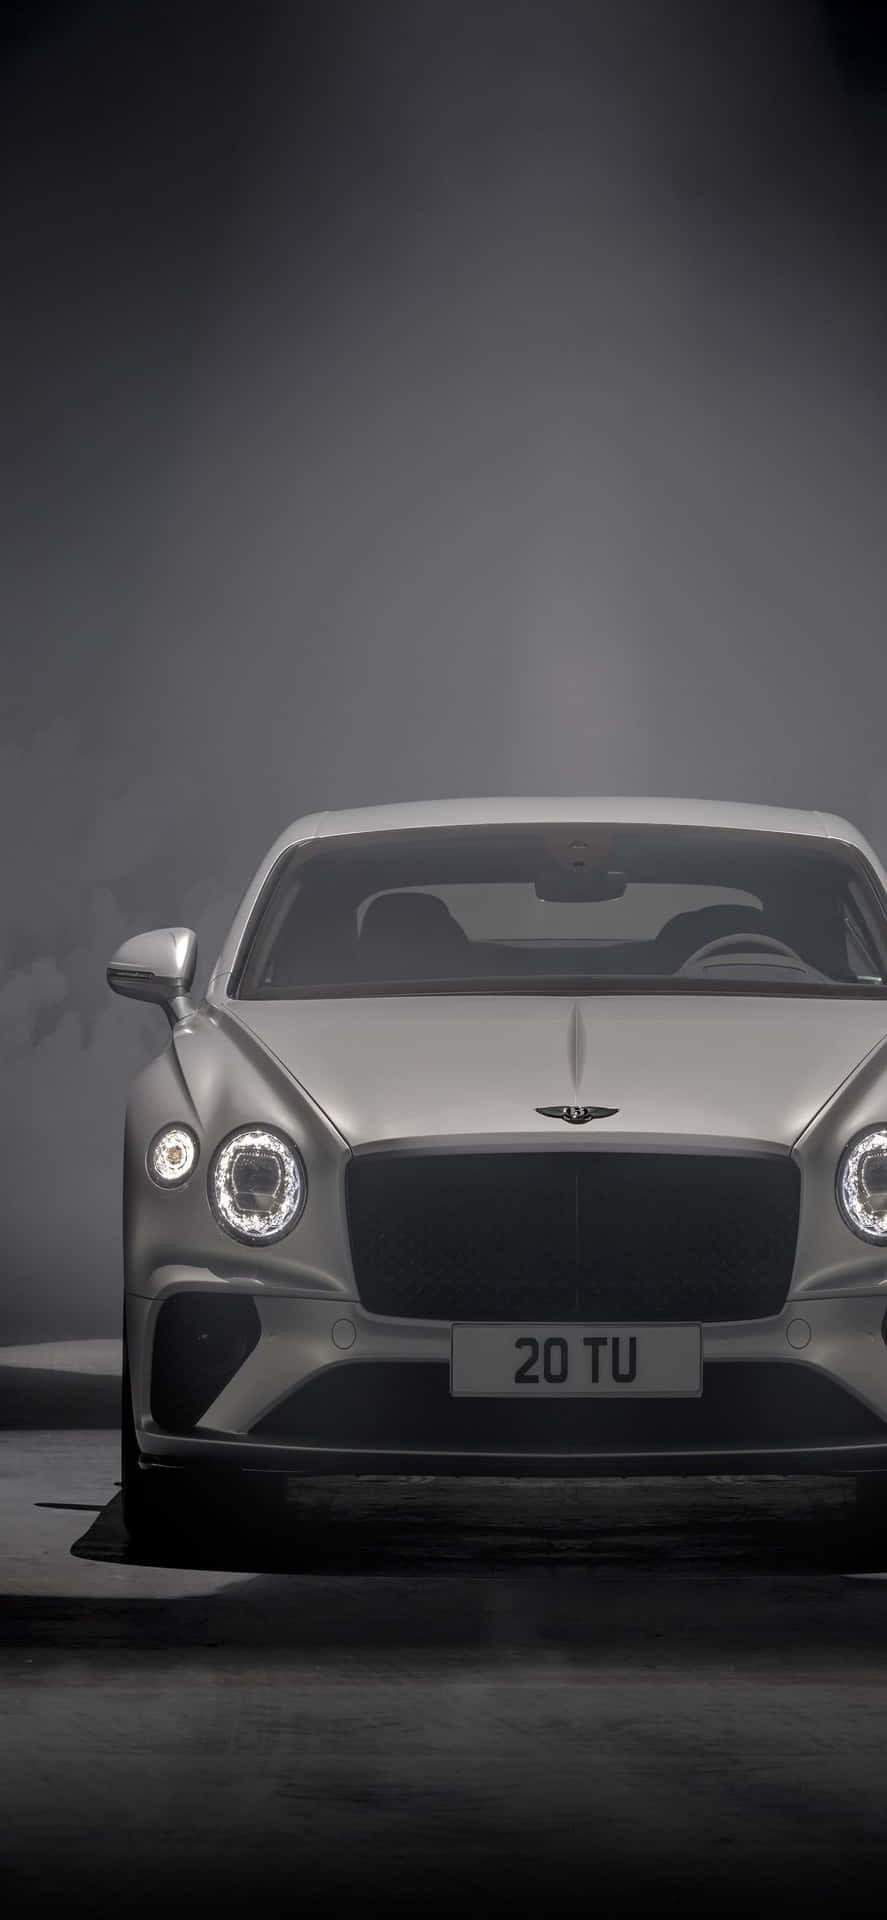 Sumergiéndoseen El Lujo: Un Iphone Xs Max En Un Bentley.